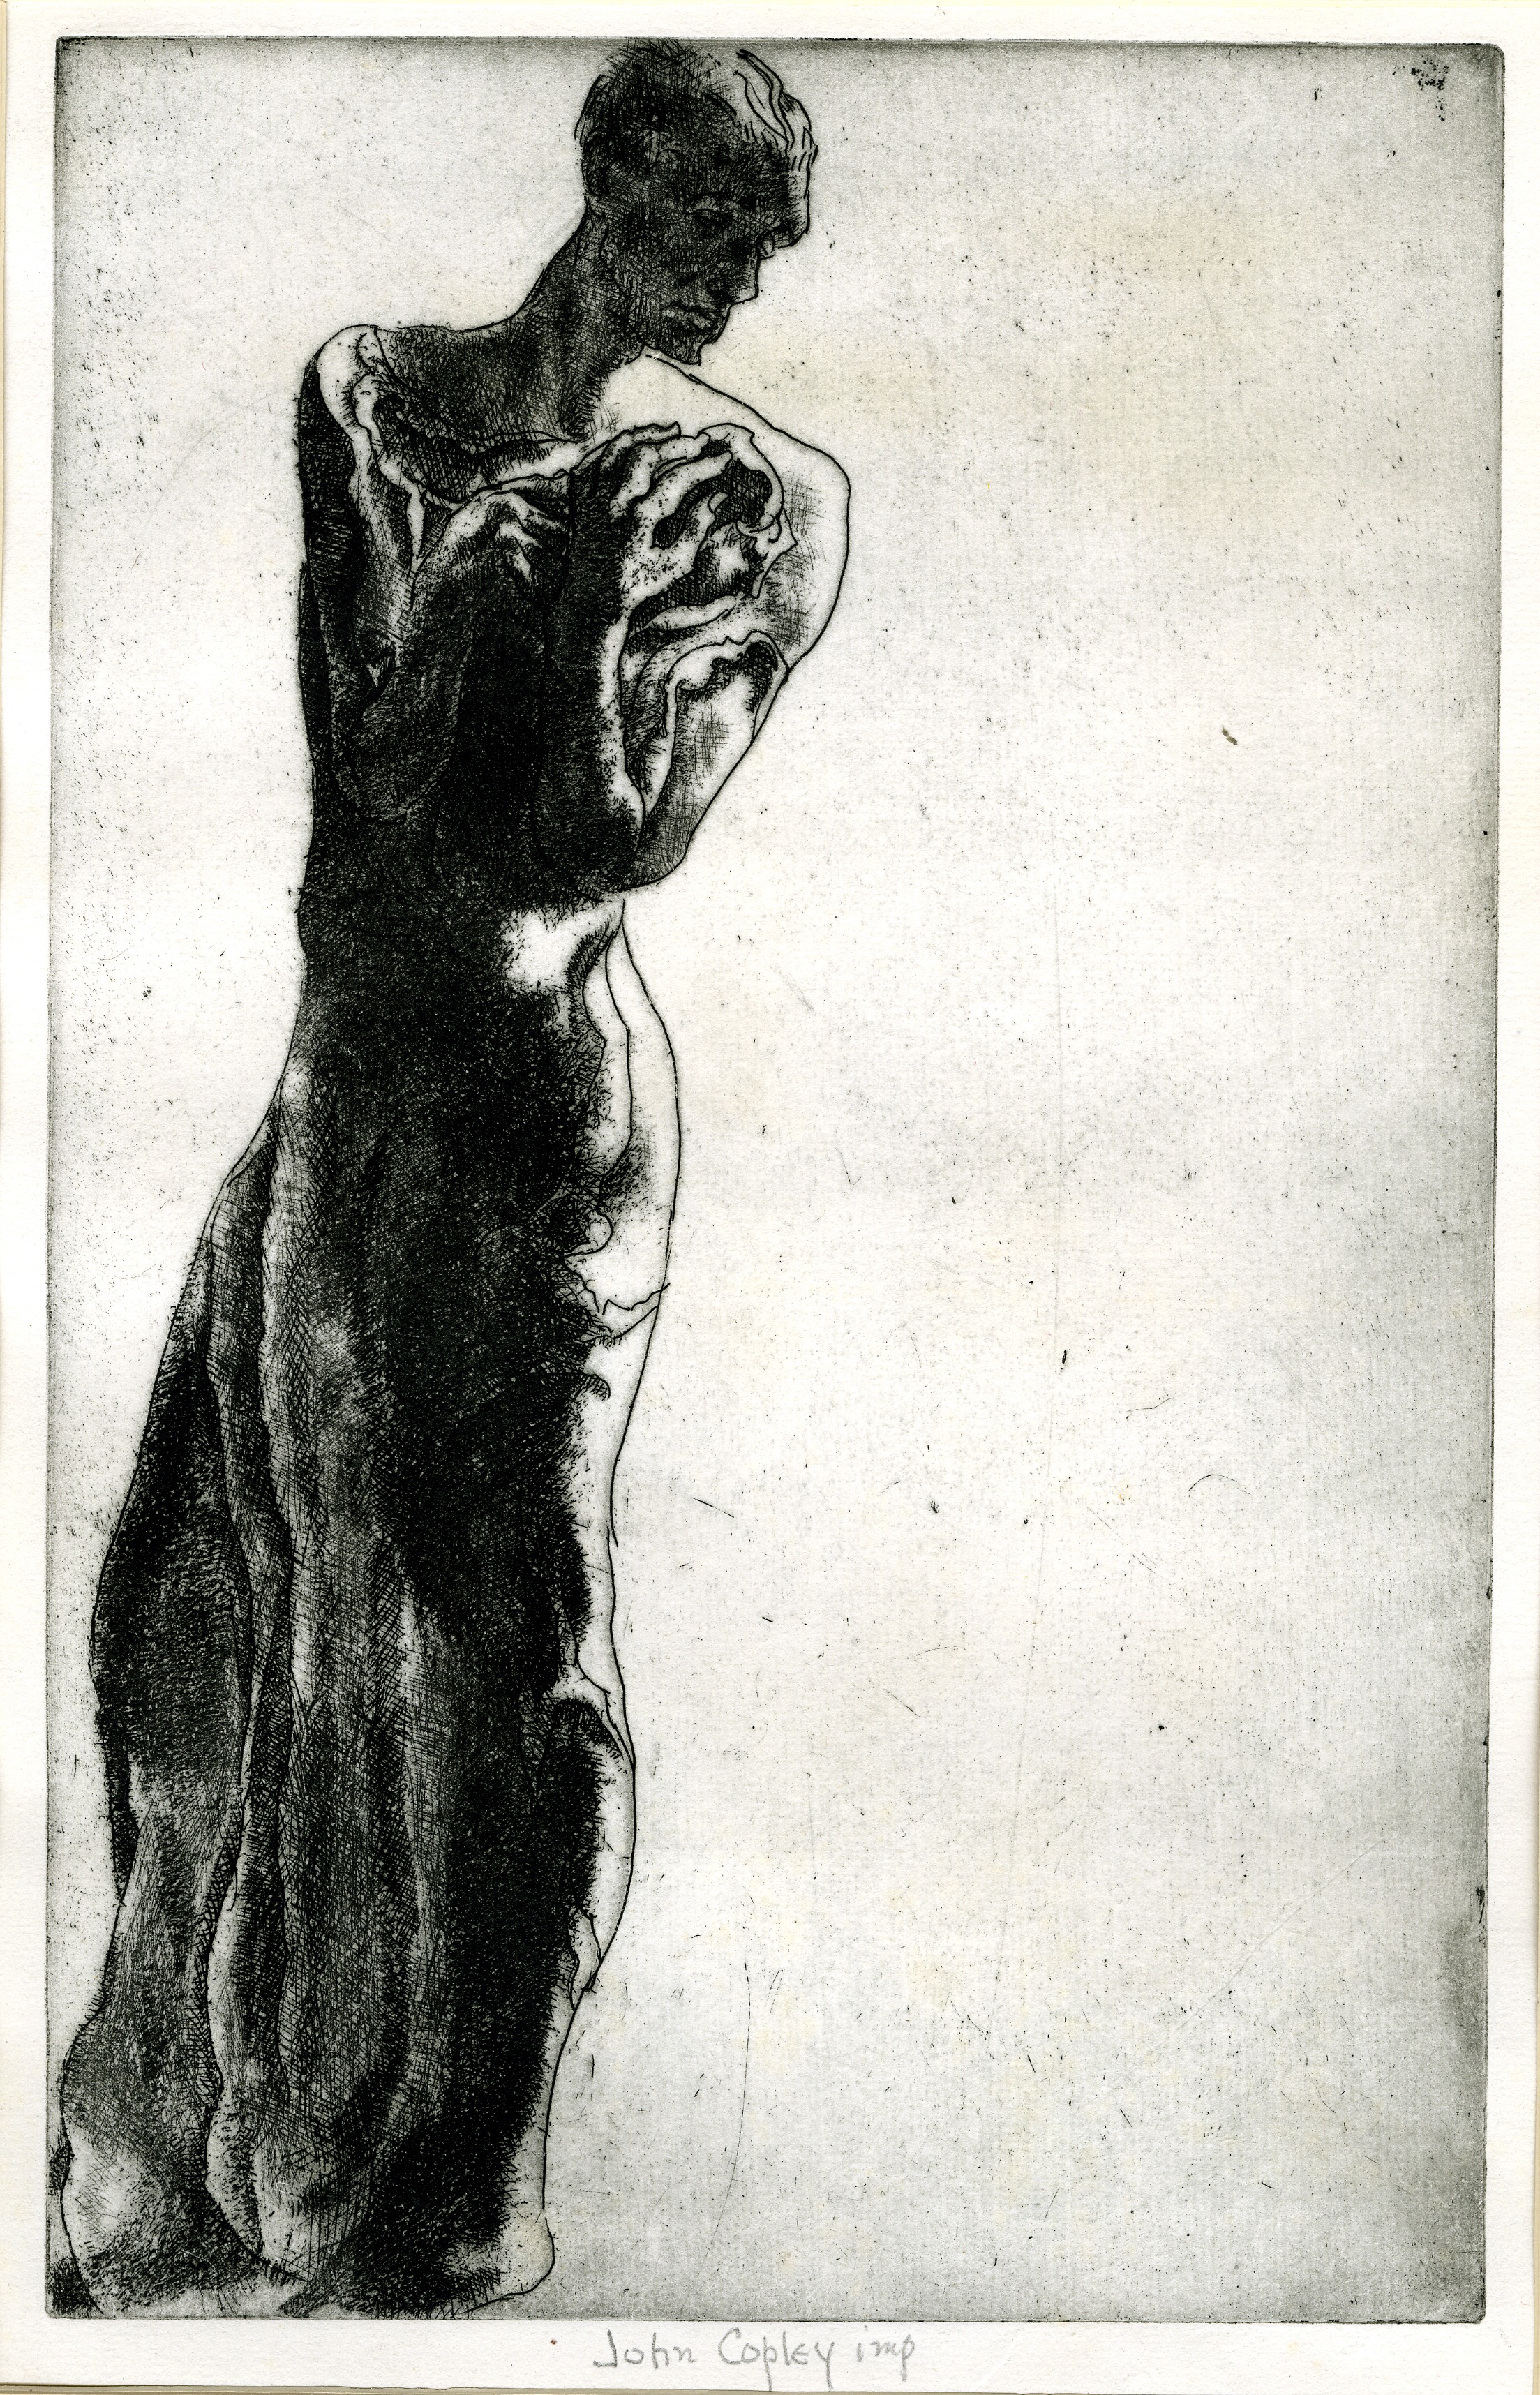 A figure in distress (circa 1944)